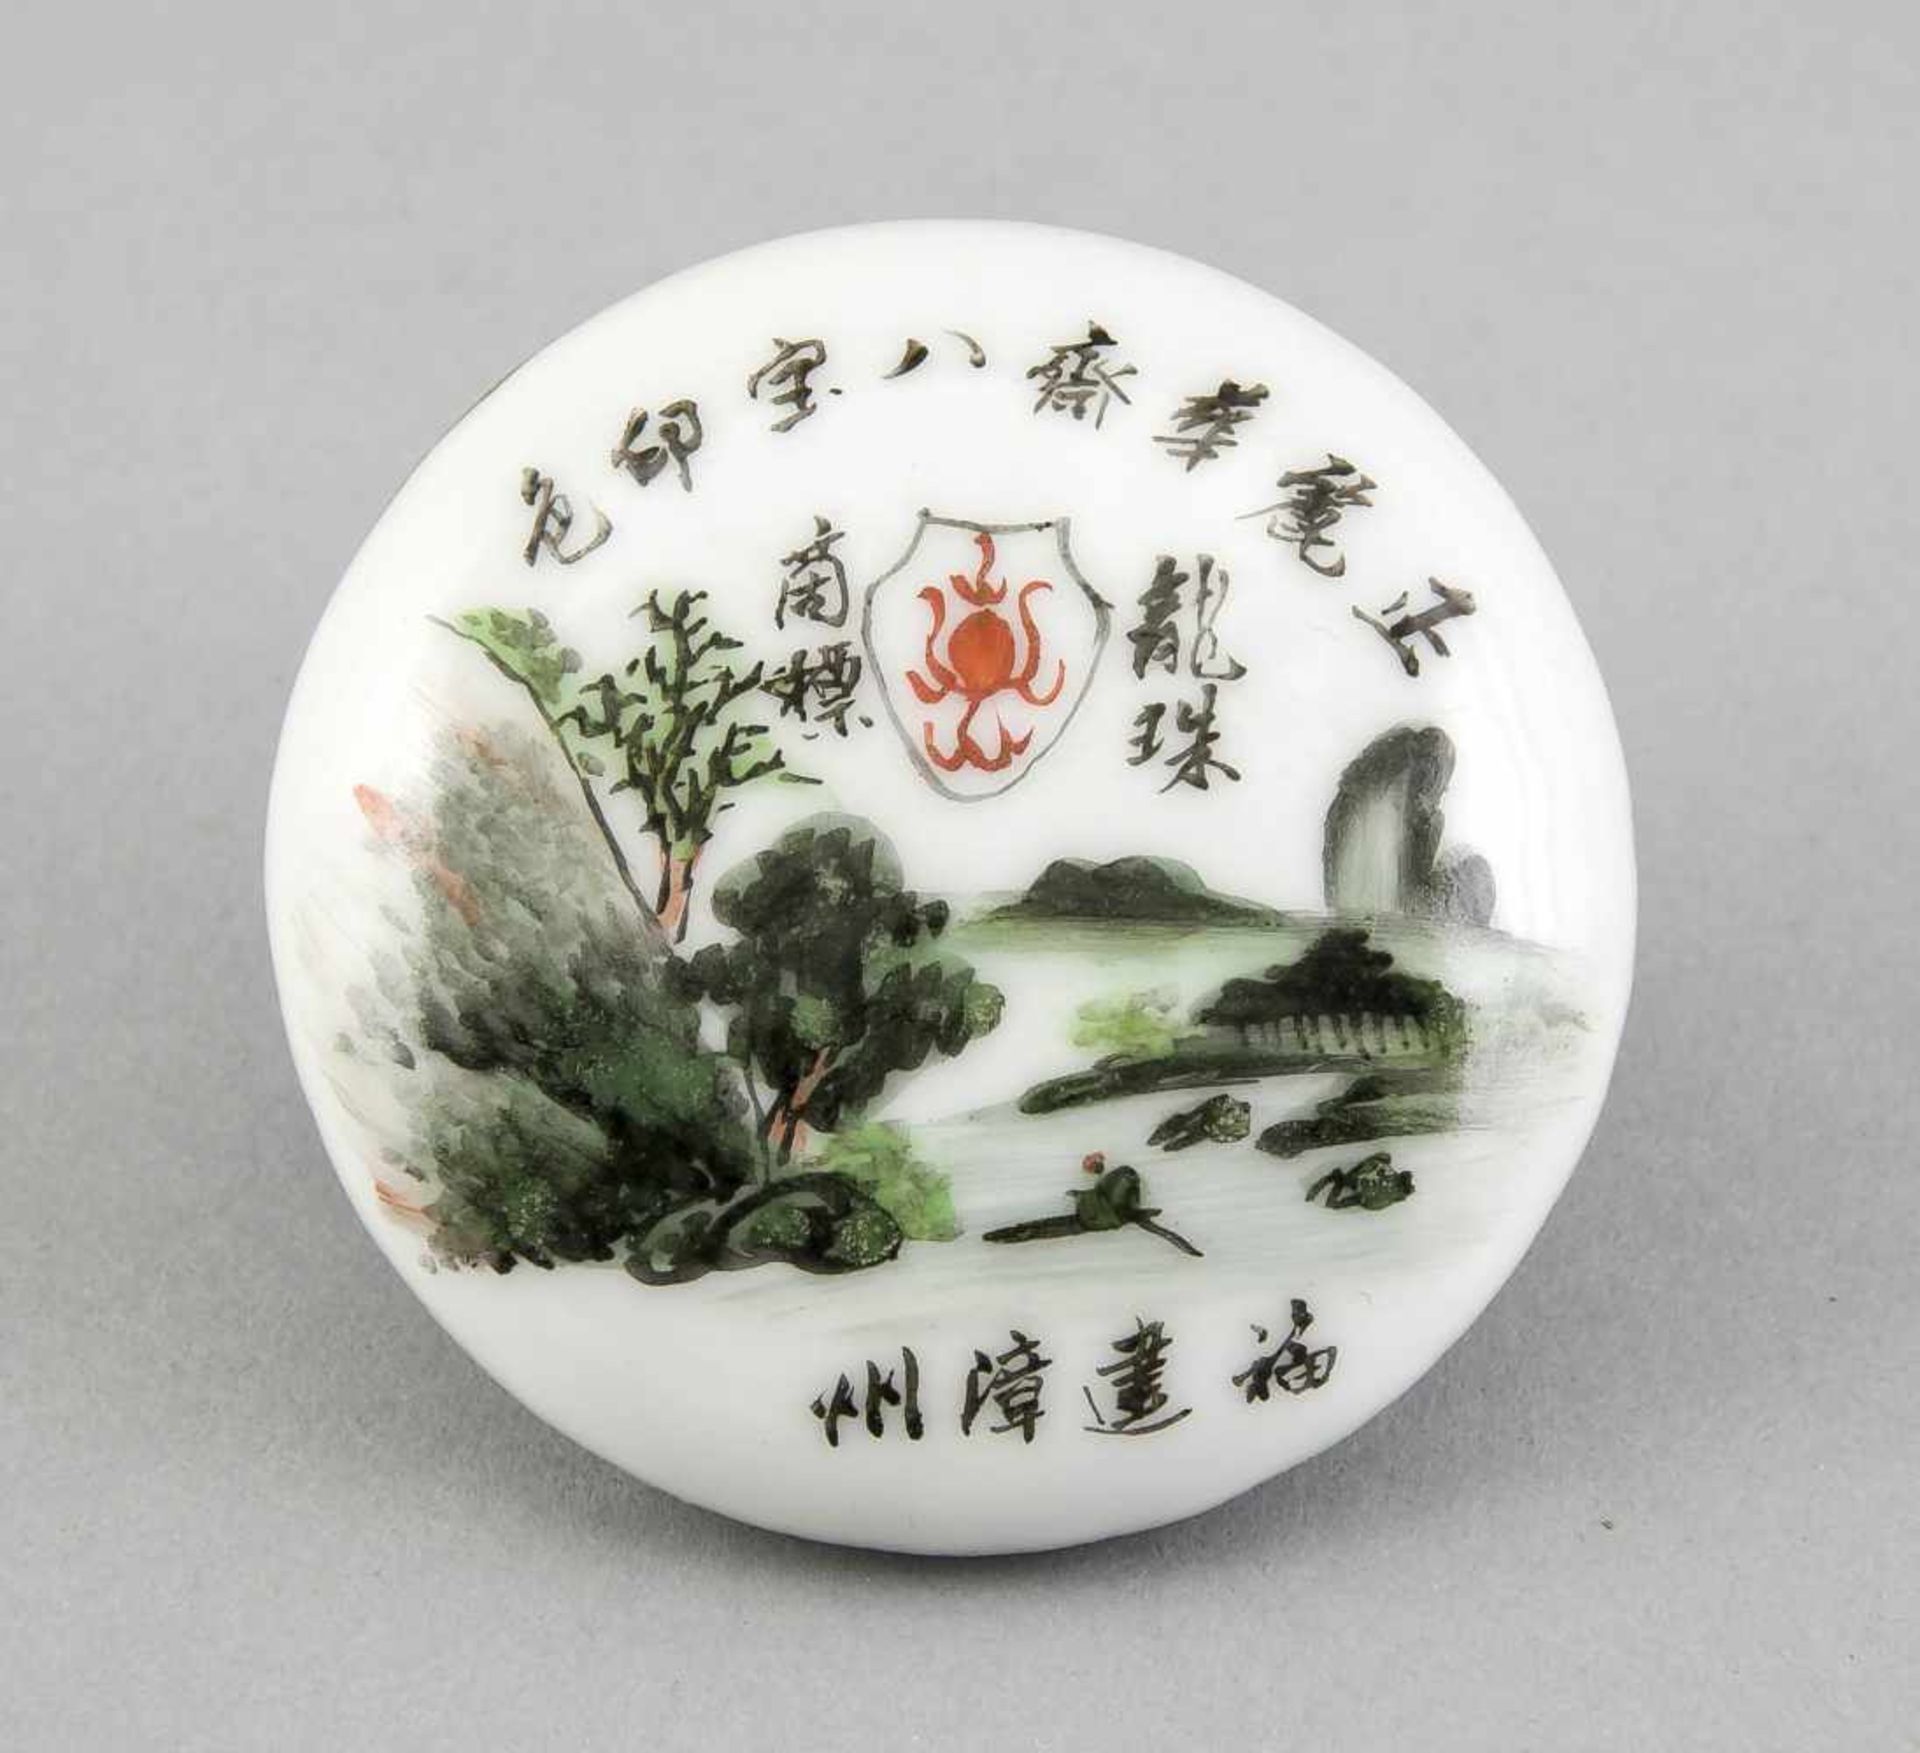 Kleine Deckeldose, China, 19. Jh., Porzellan, polychrome Aufglasurbemalung, flache Form auf